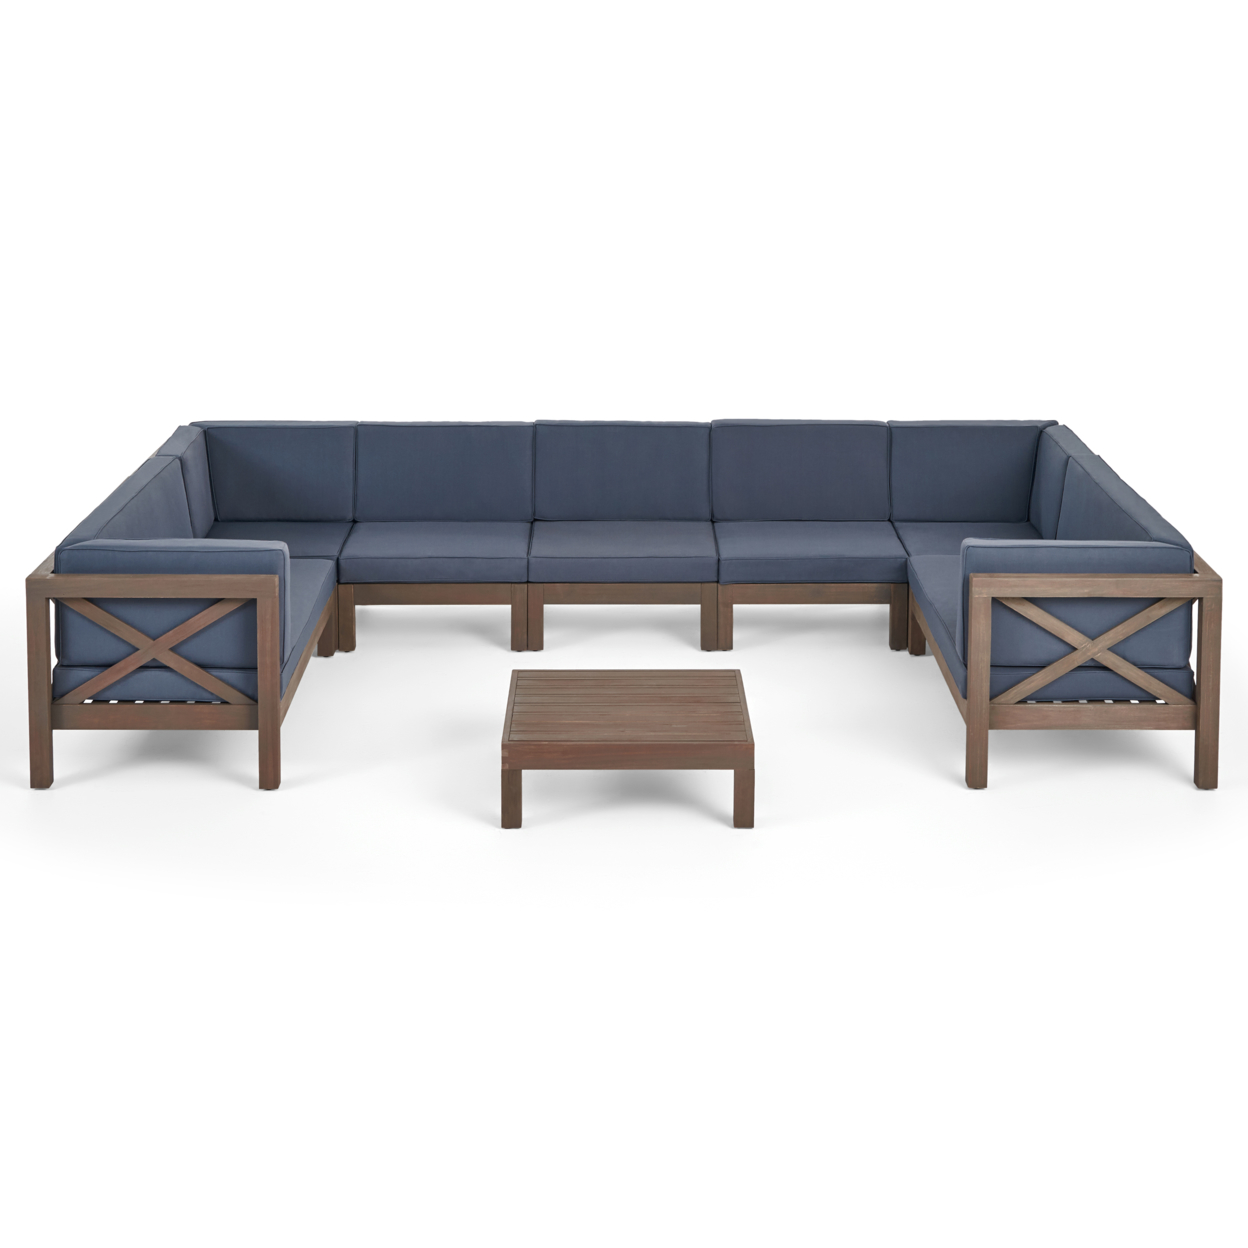 Isabella Outdoor 9 Seater Acacia Wood Sectional Sofa Set - Gray Finish + Dark Gray